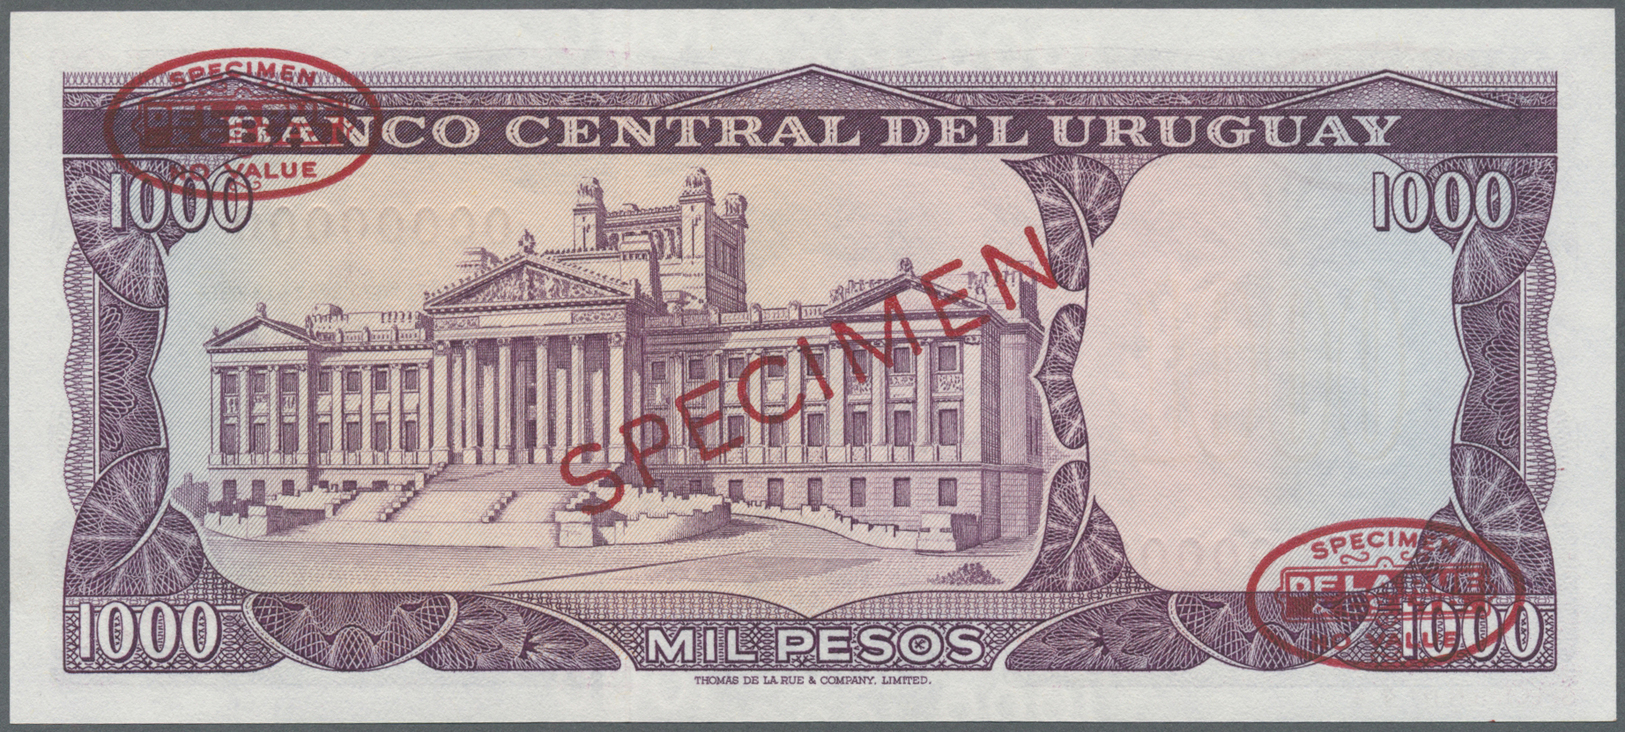 03476 Uruguay: 1000 Pesos 1967 Specimen P. 49s In Condition: UNC. - Uruguay